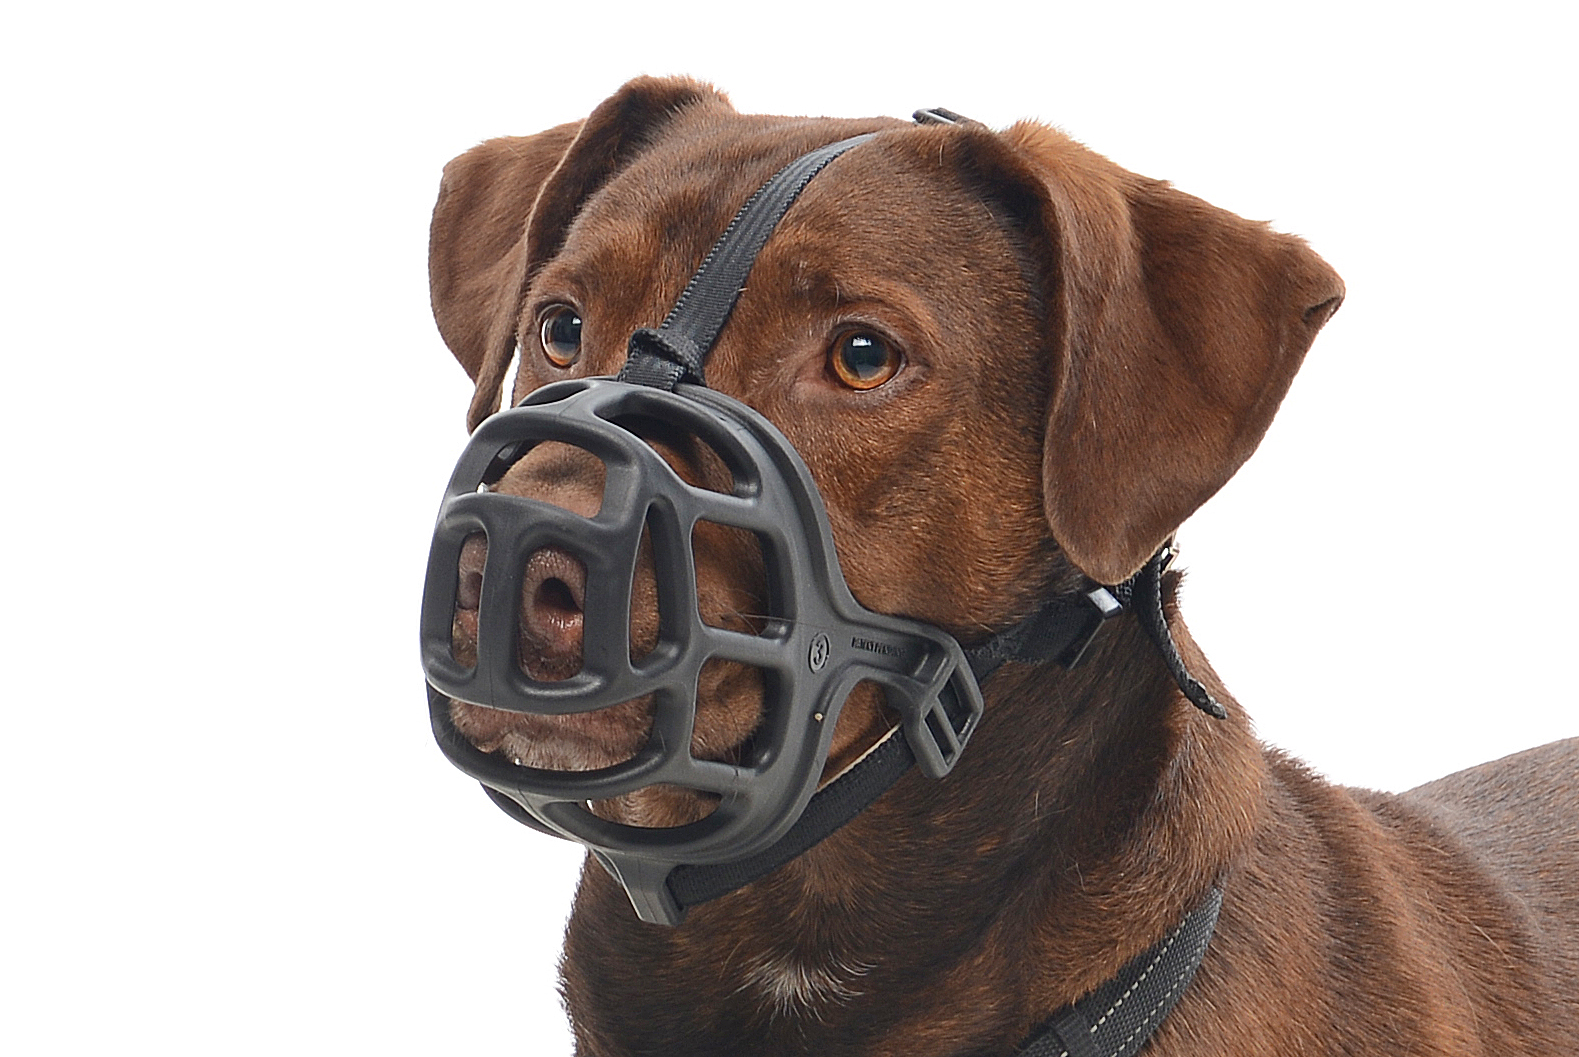 BUSTER Extreme dog muzzle, size 5